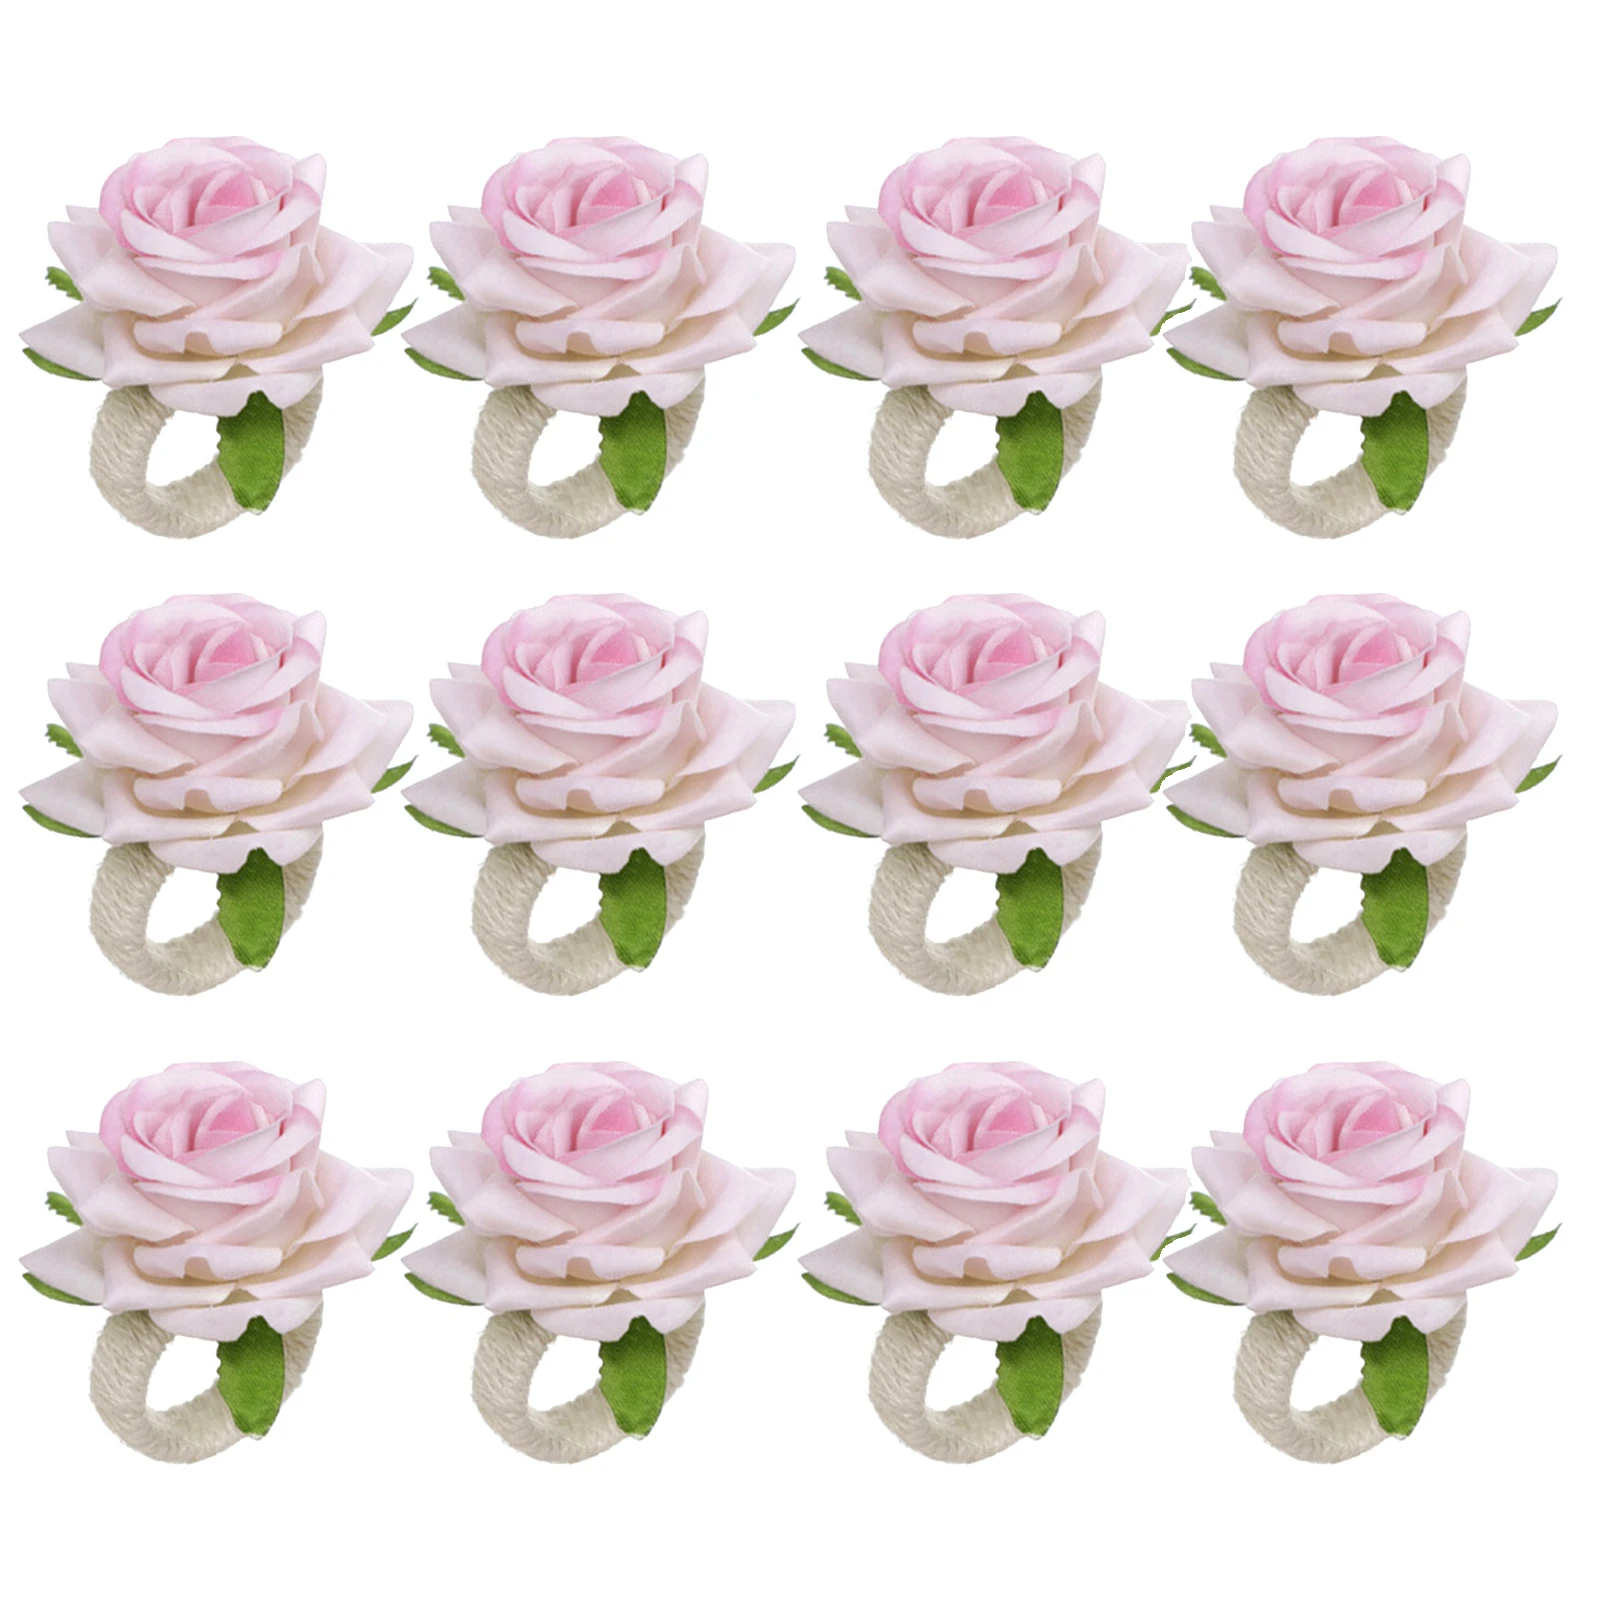 

12 шт. кольцо для салфеток с цветком розы ручная работа День Святого Валентина юбилей для свадебного банкета многоразовое домашнее украшение для стола романтическое